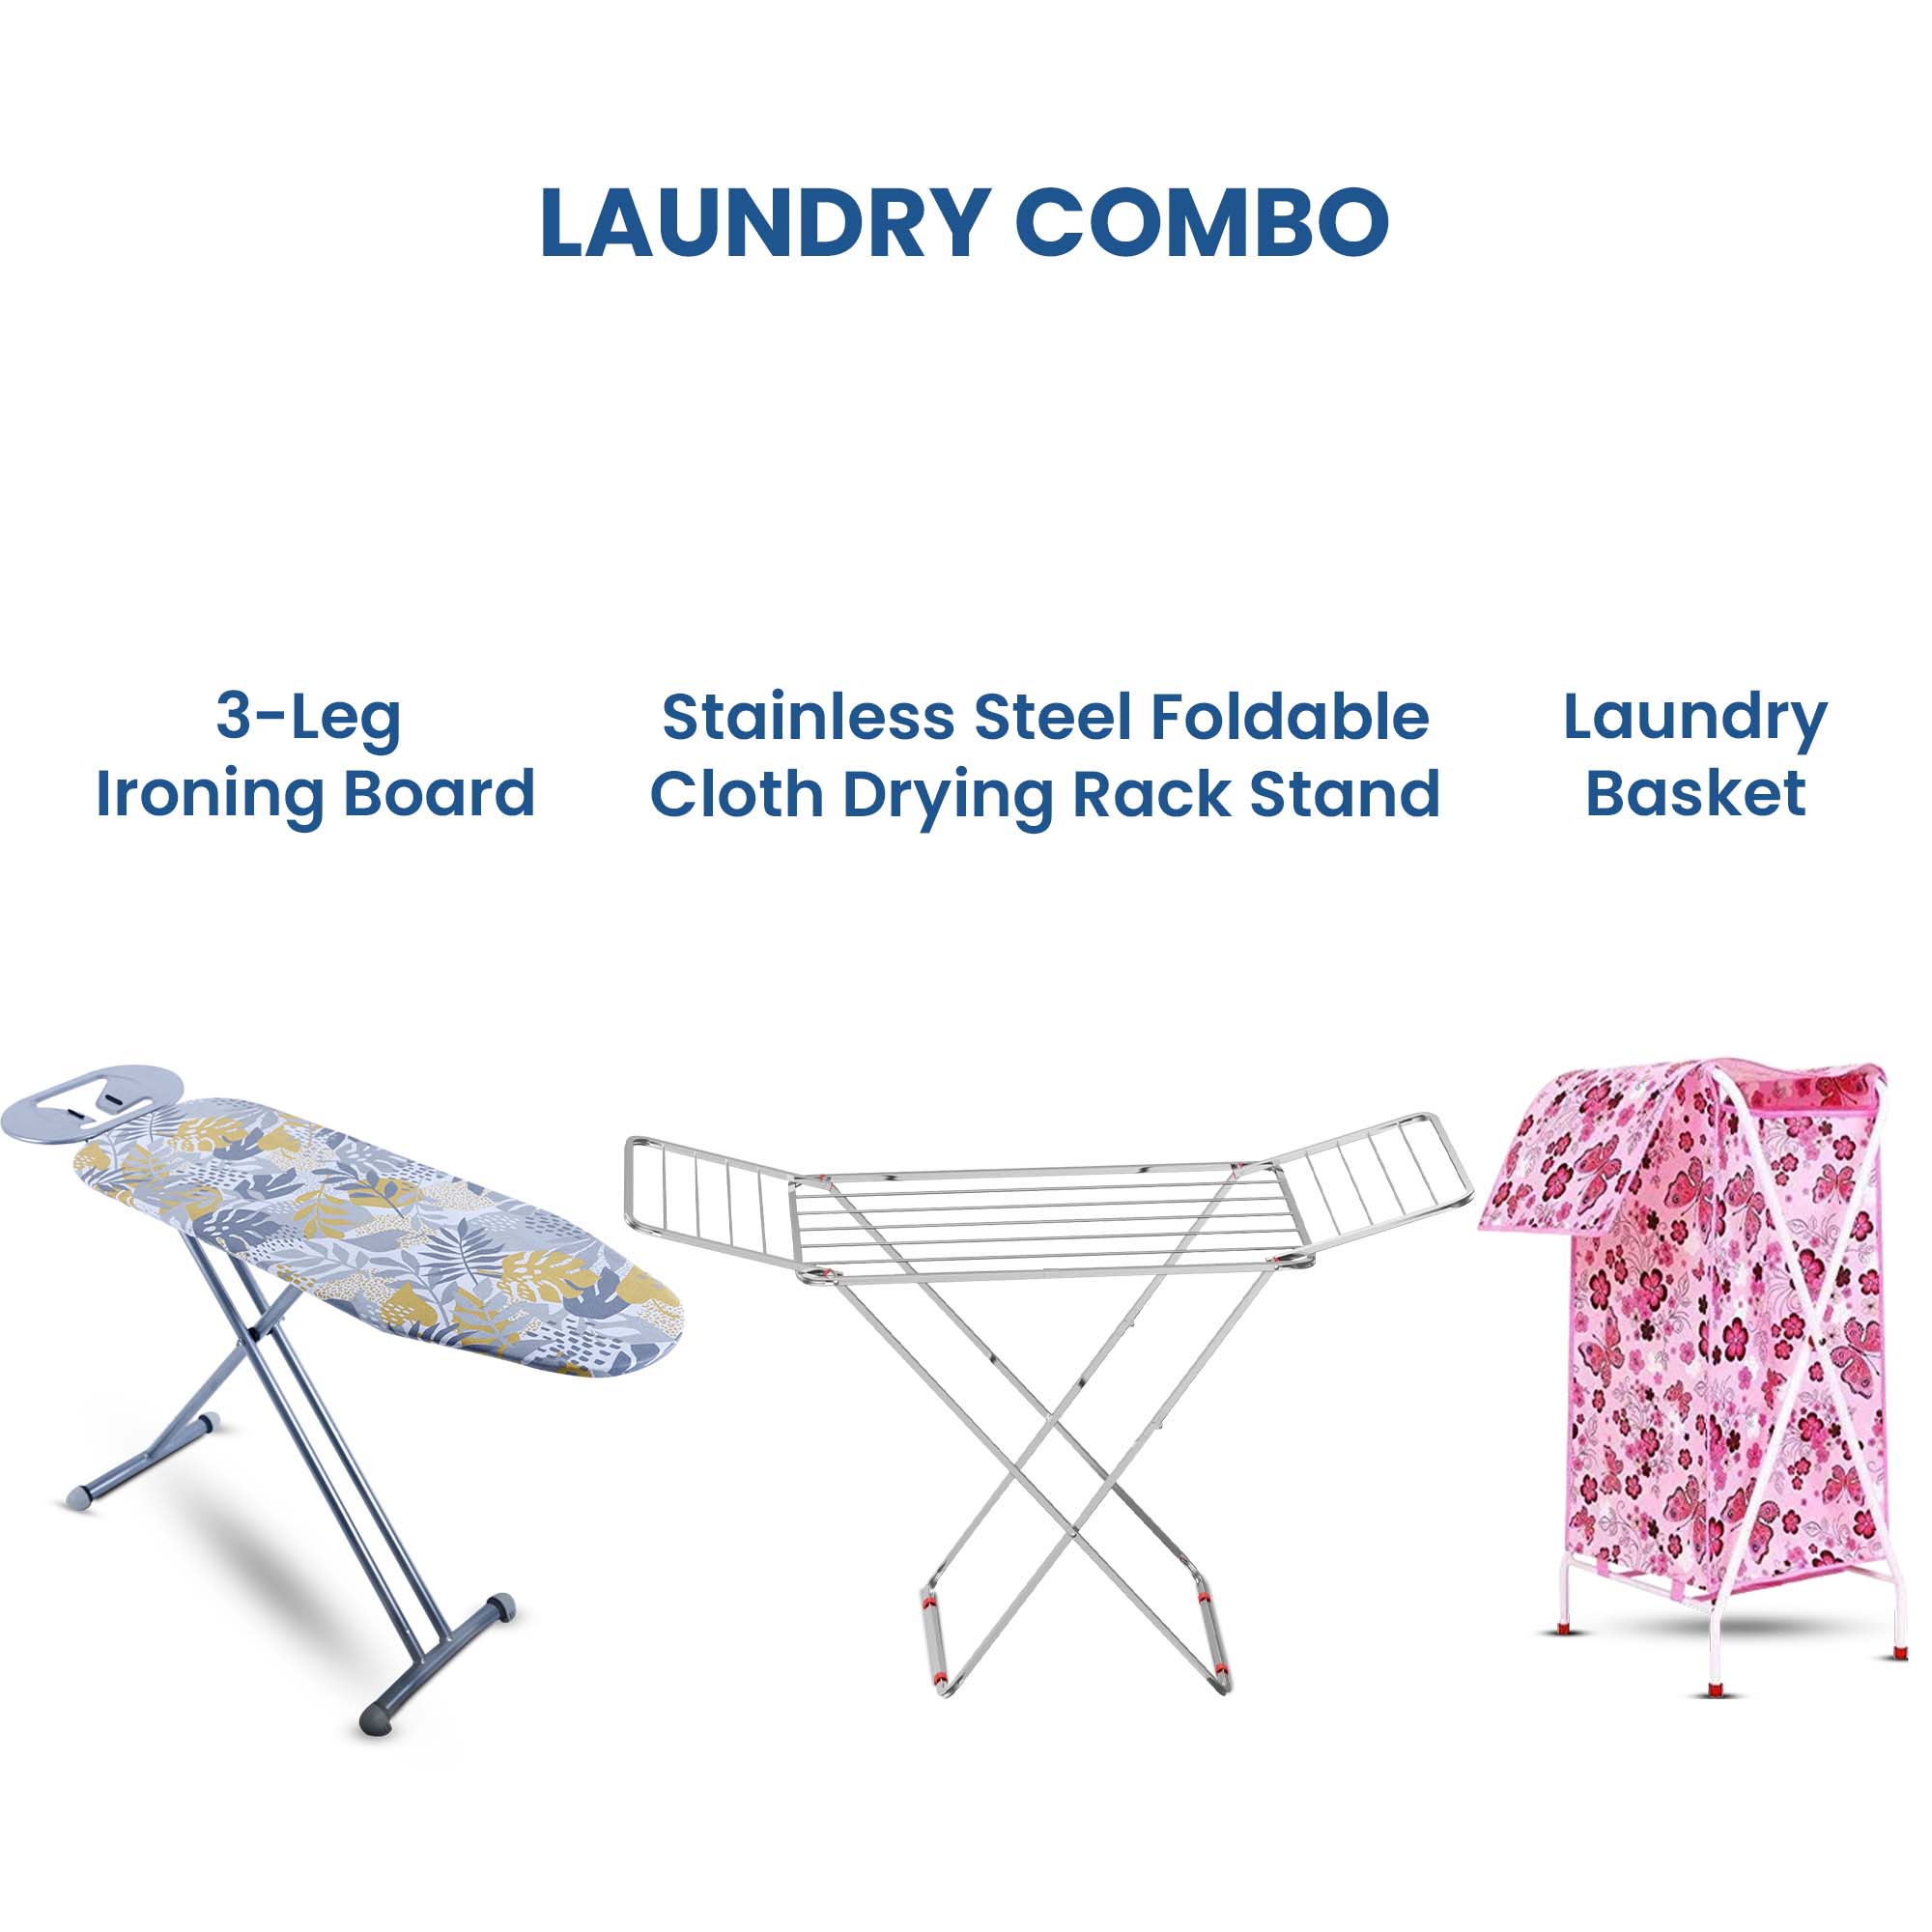 Laundry Combo